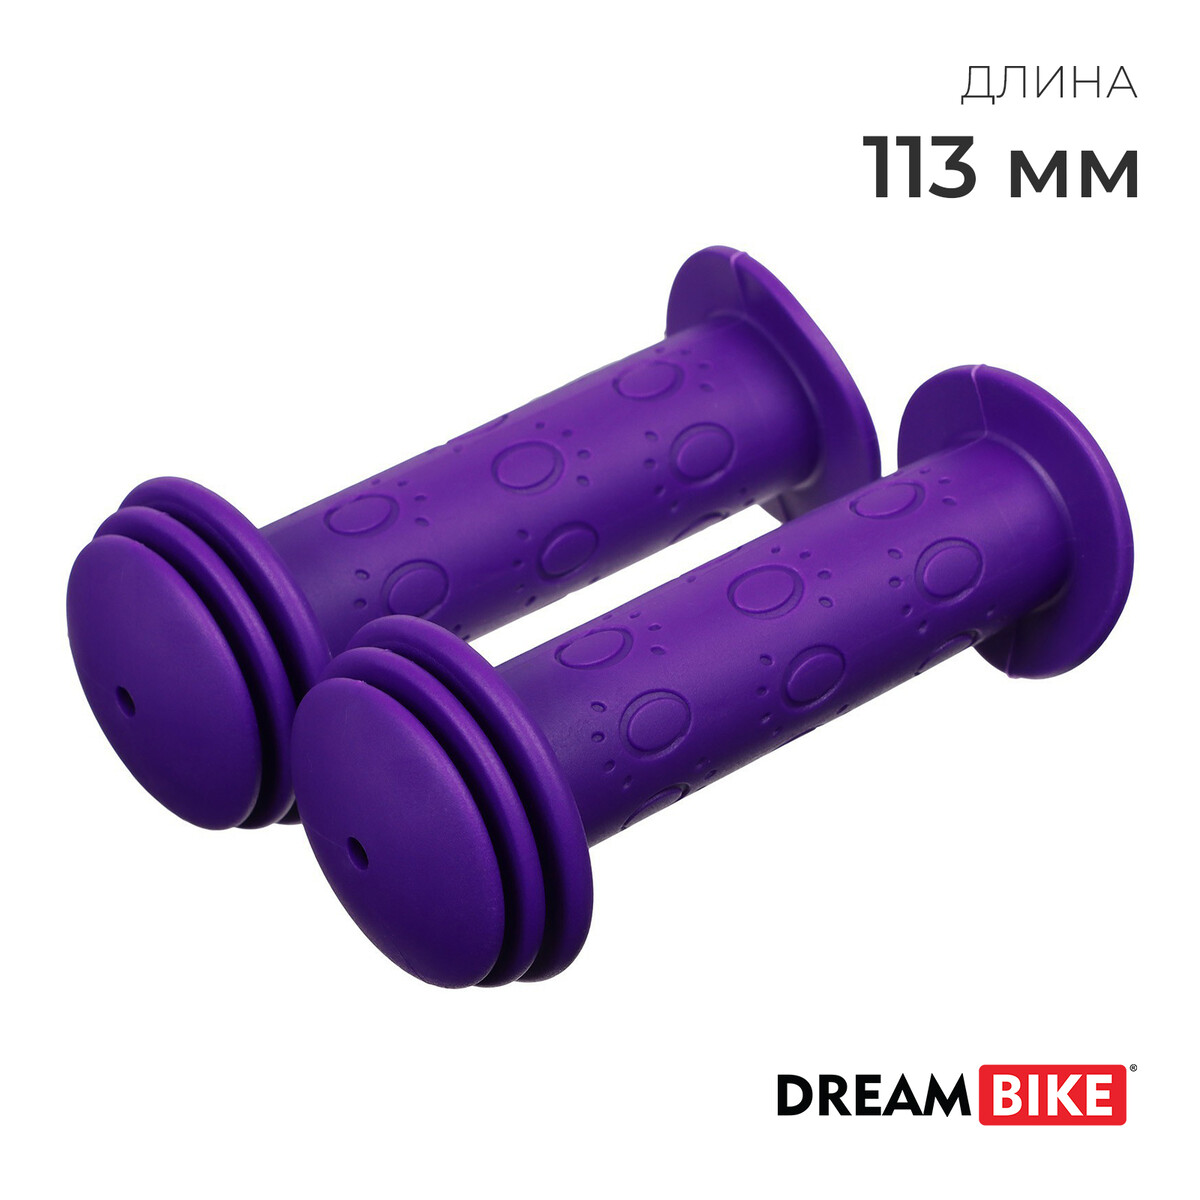 Грипсы dream bike, 113 мм, цвет фиолетовый грипсы dream bike 113 мм фиолетовый